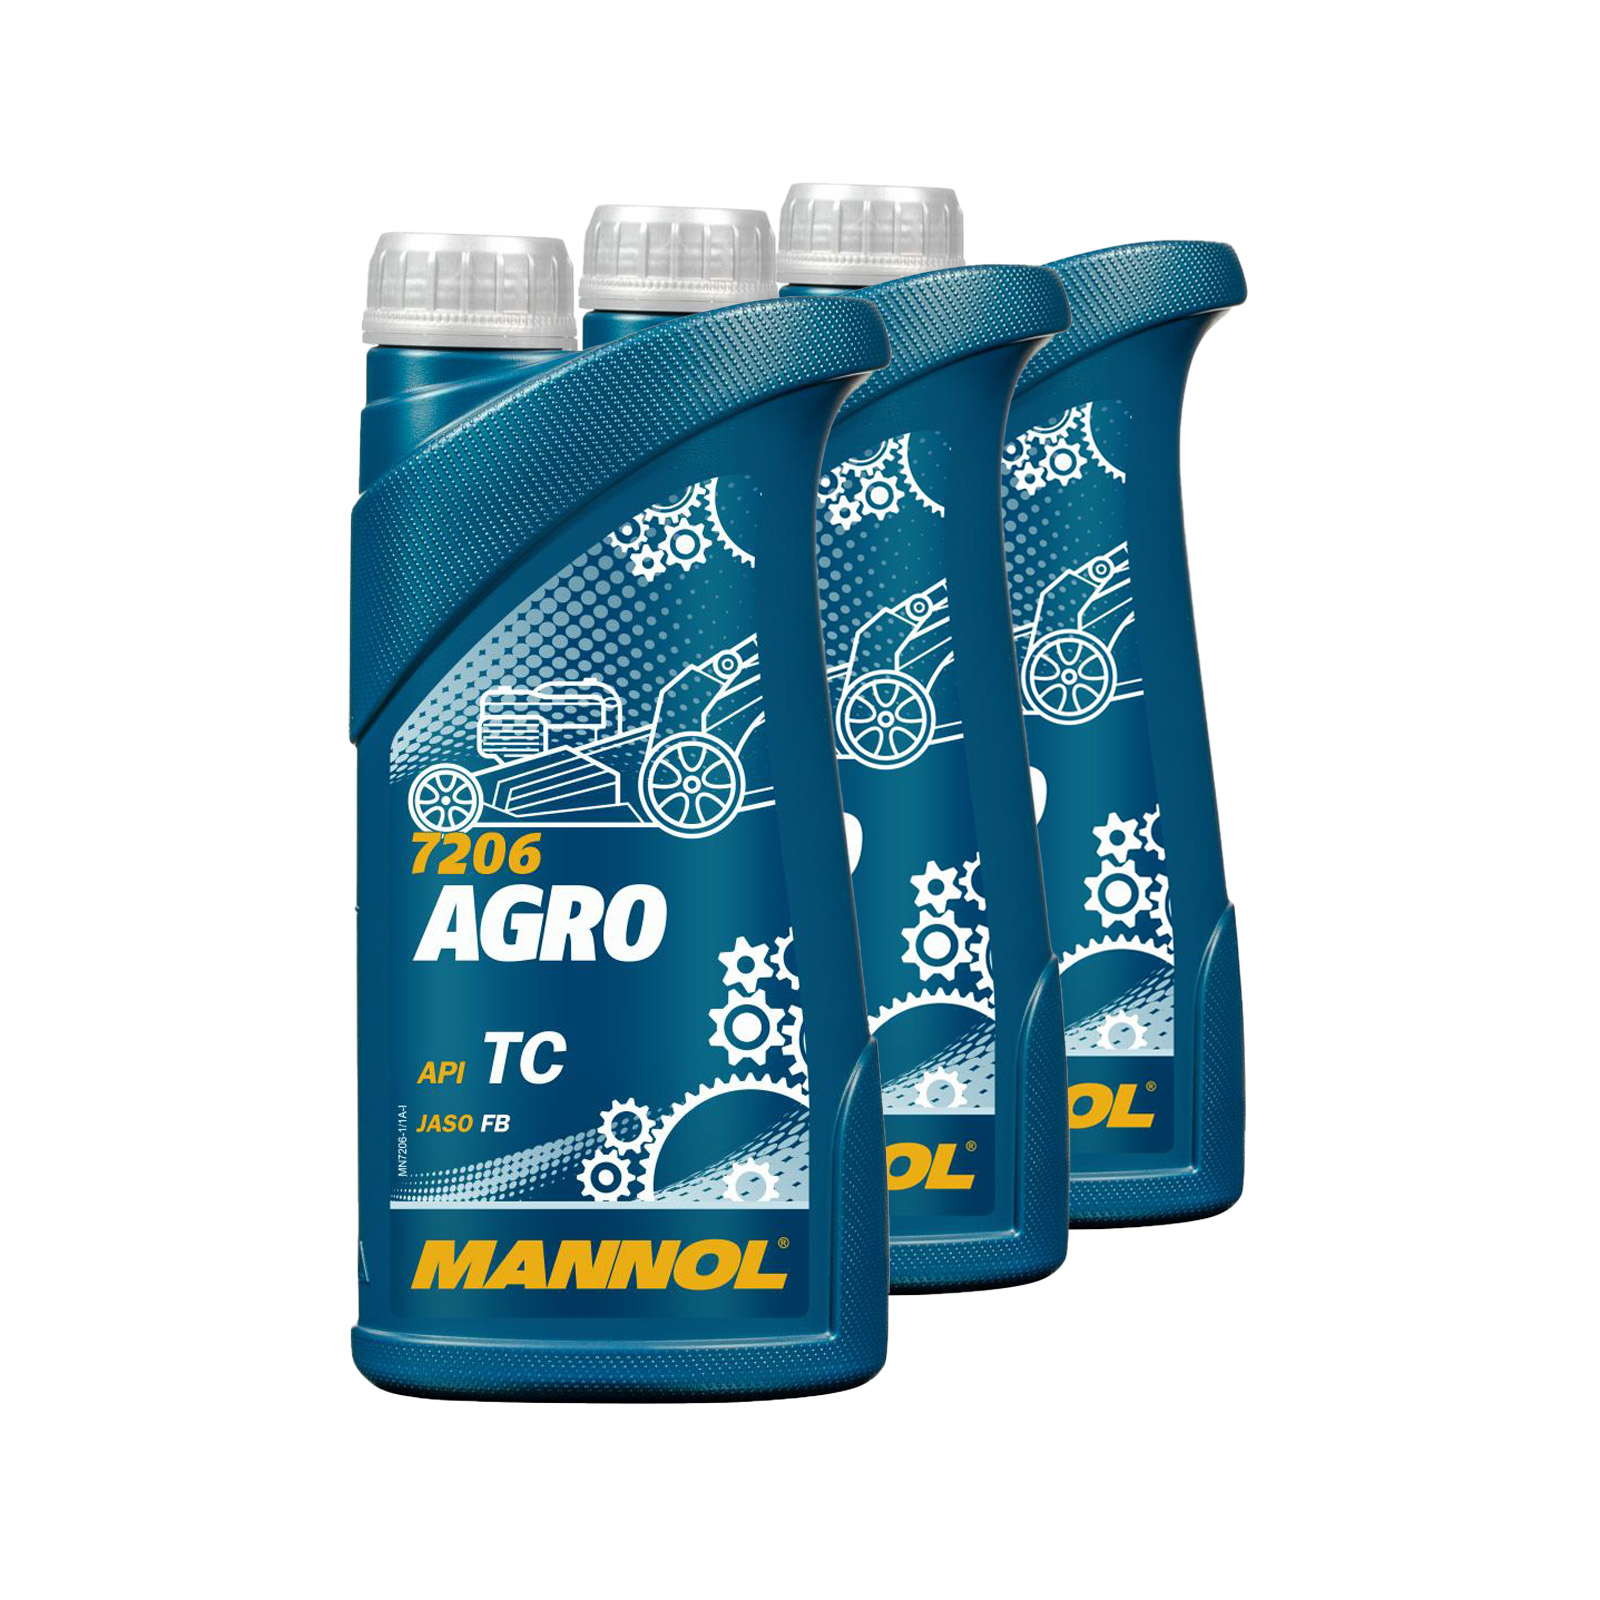 3 Liter (3x1) MANNOL Agro API TC Öl für Gartengeräte Öl für Gartengeräte